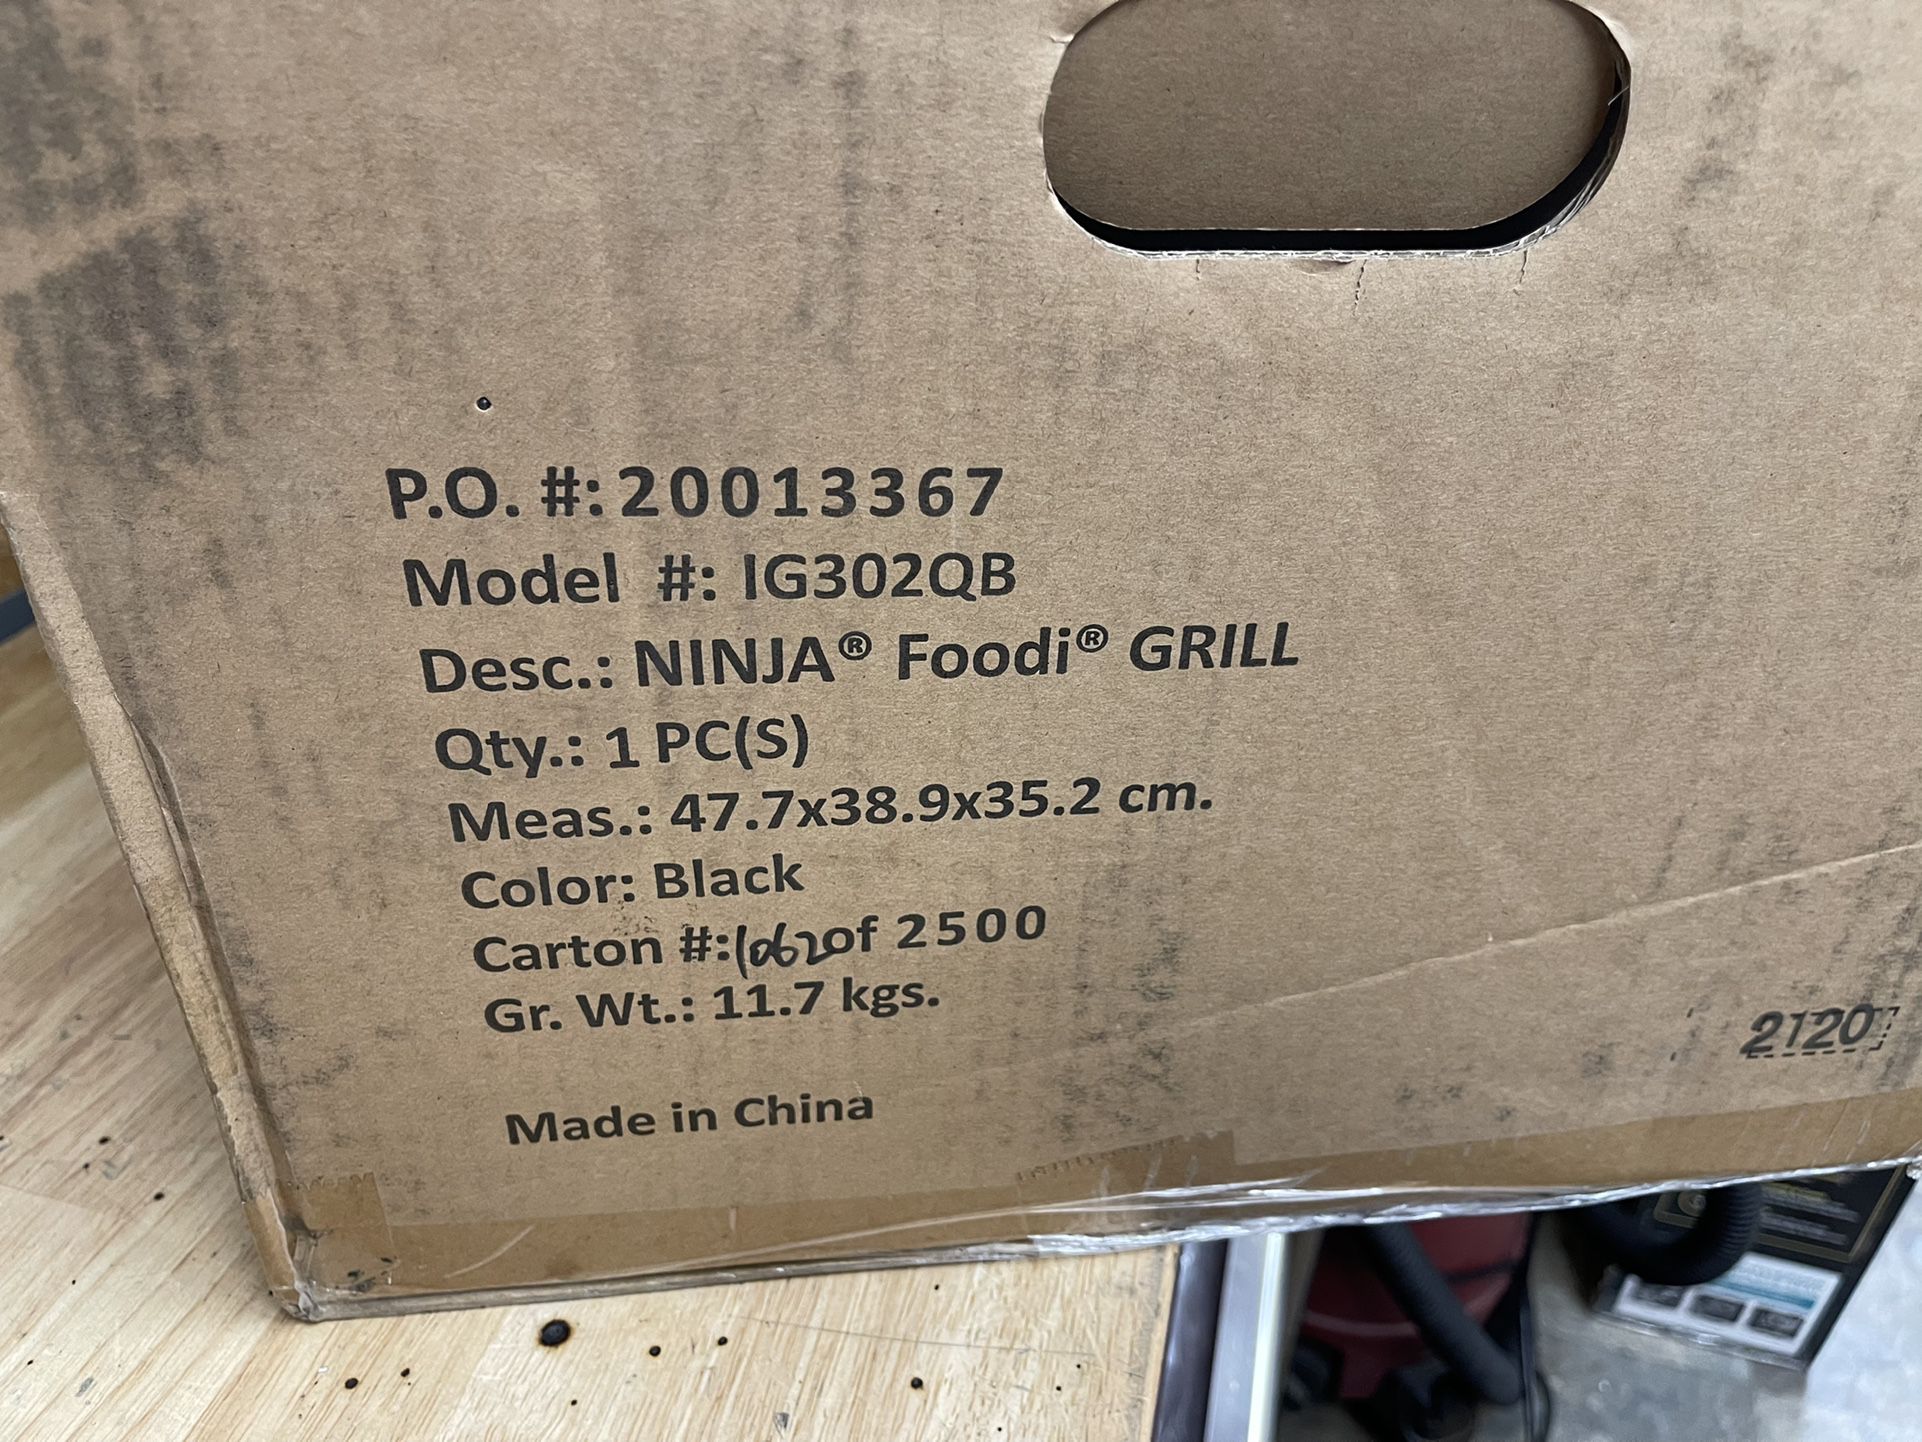 Ninja Foodi 6-qt Indoor Grill with Air Fry,Skewers & Roast Rack